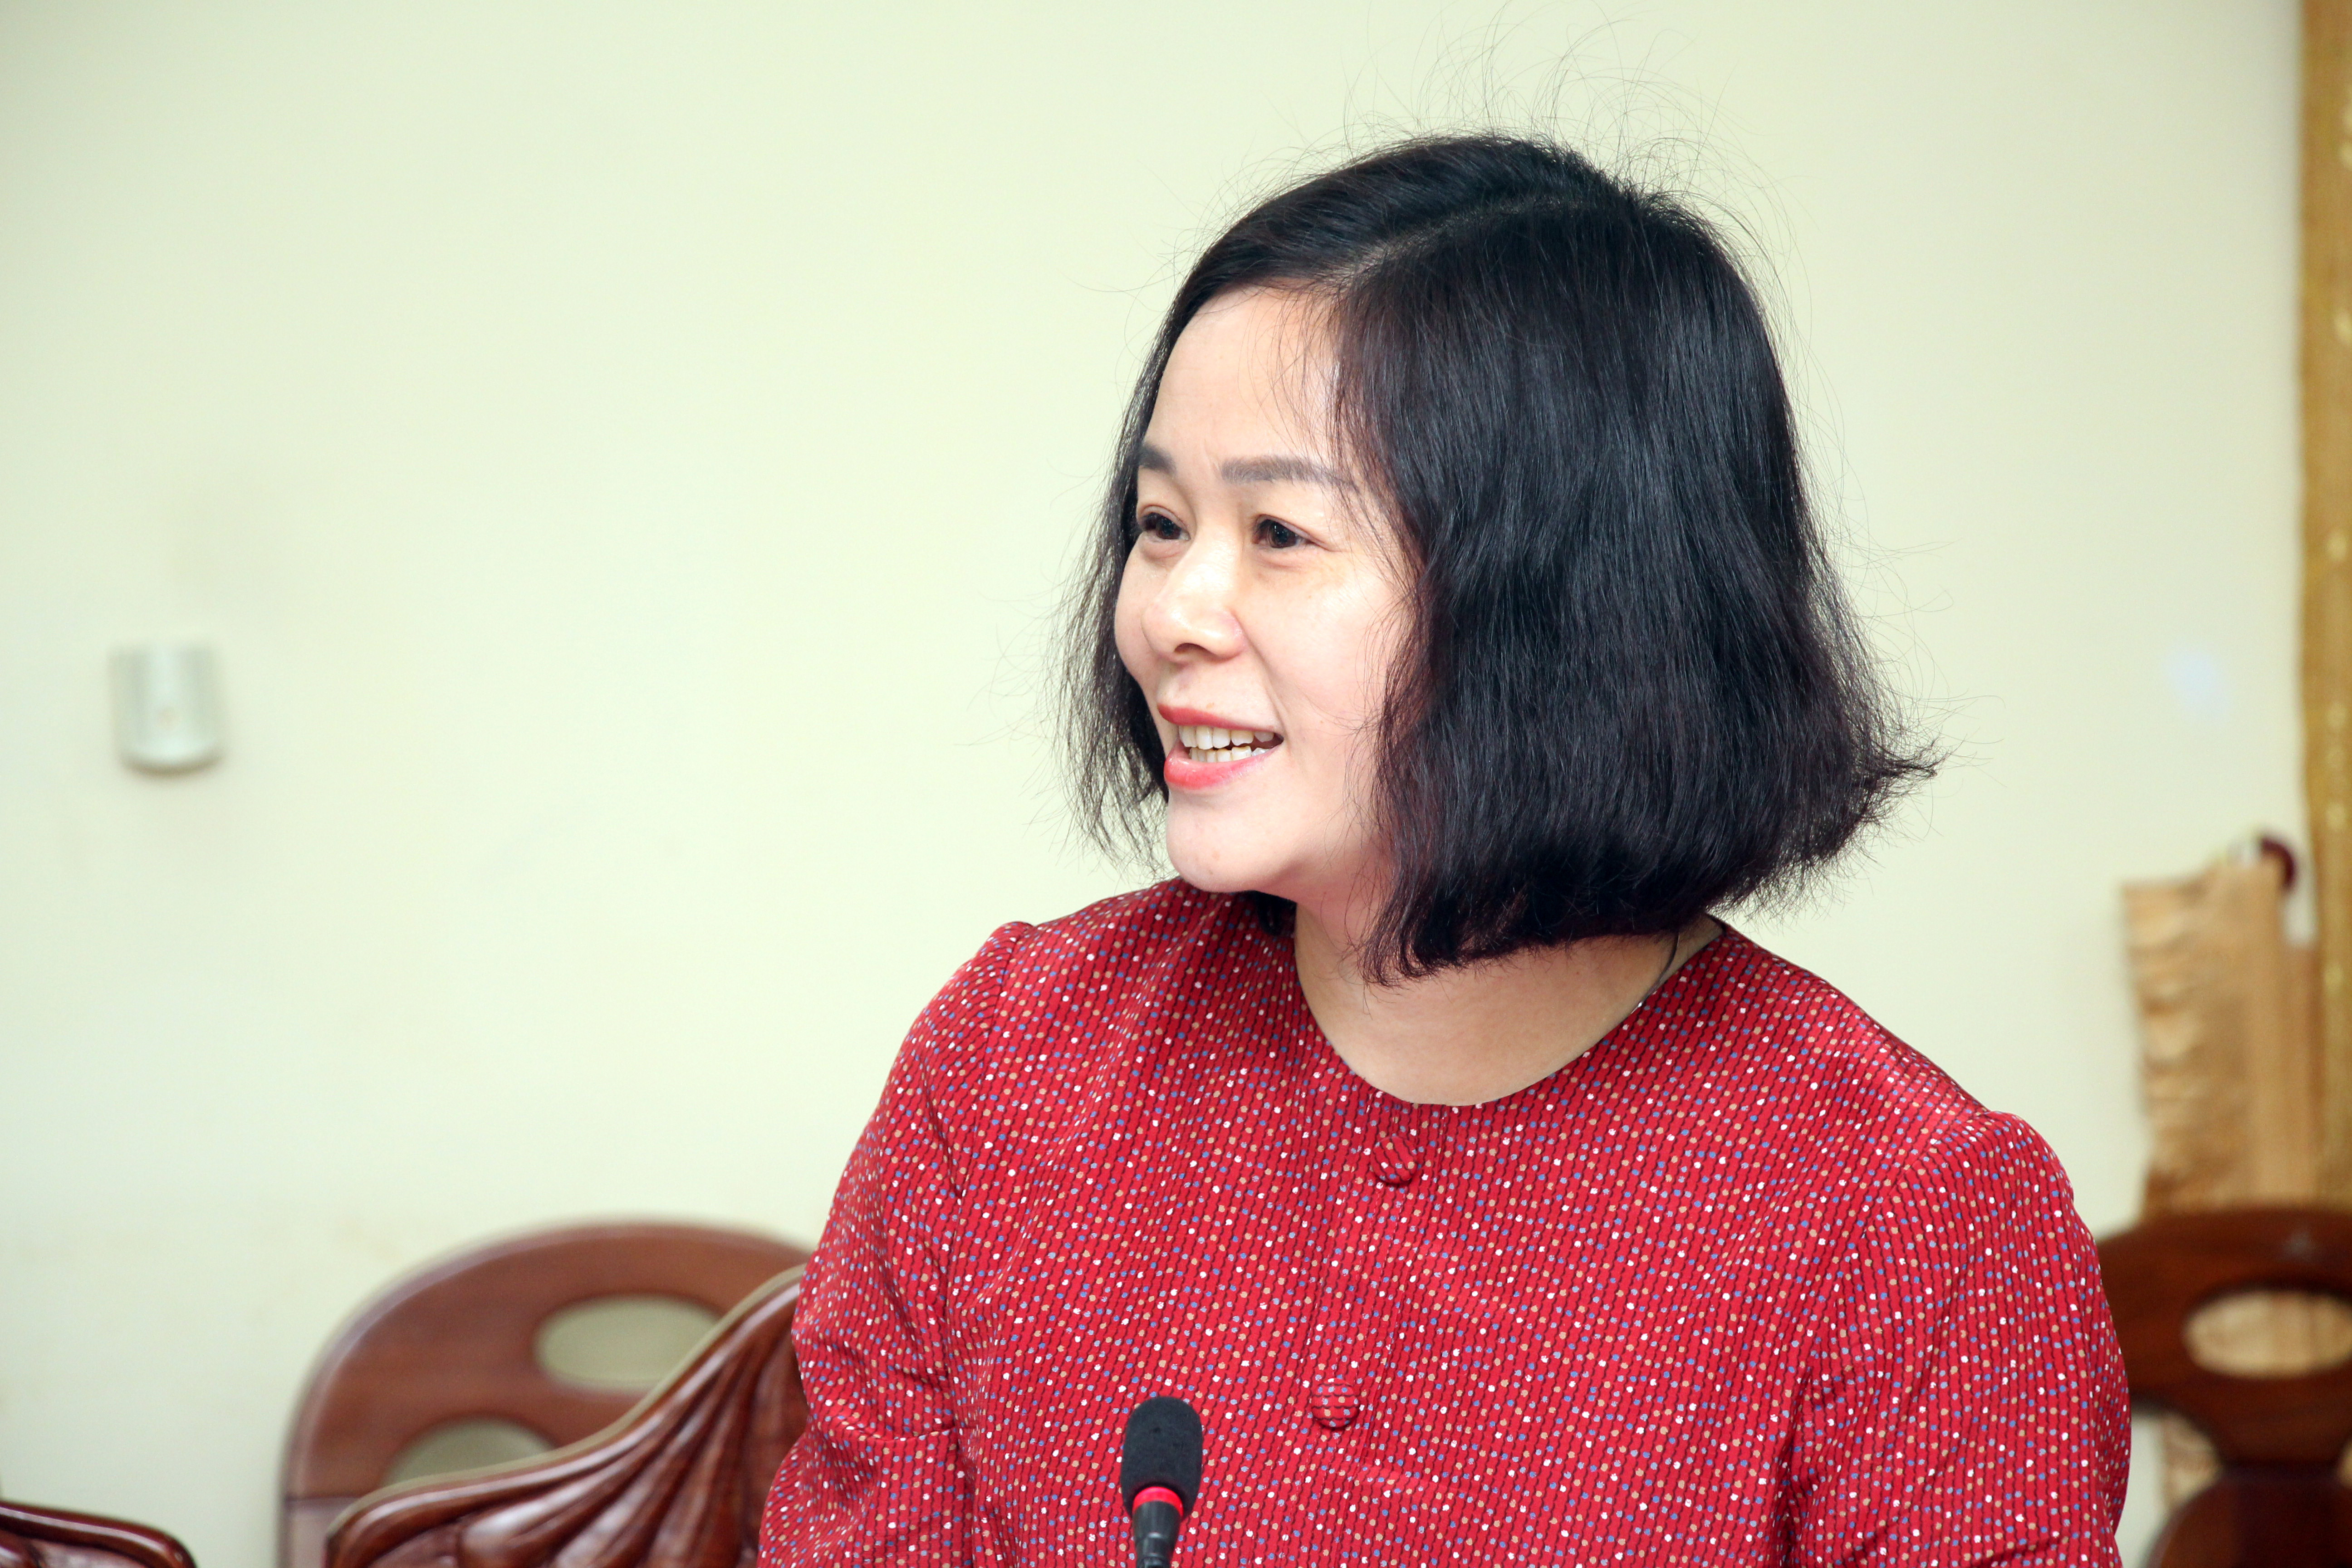 Phó Trưởng Ban Tuyên giáo Tỉnh ủy bna Lê Thị Hoài Chung - phó Ban Tuyên giáo Tỉnh ủy trình bày Báo cáo sơ kết 5 năm thực hiện Nghị quyết số 29-NQ/TW. Ảnh: Đào Tuấn 